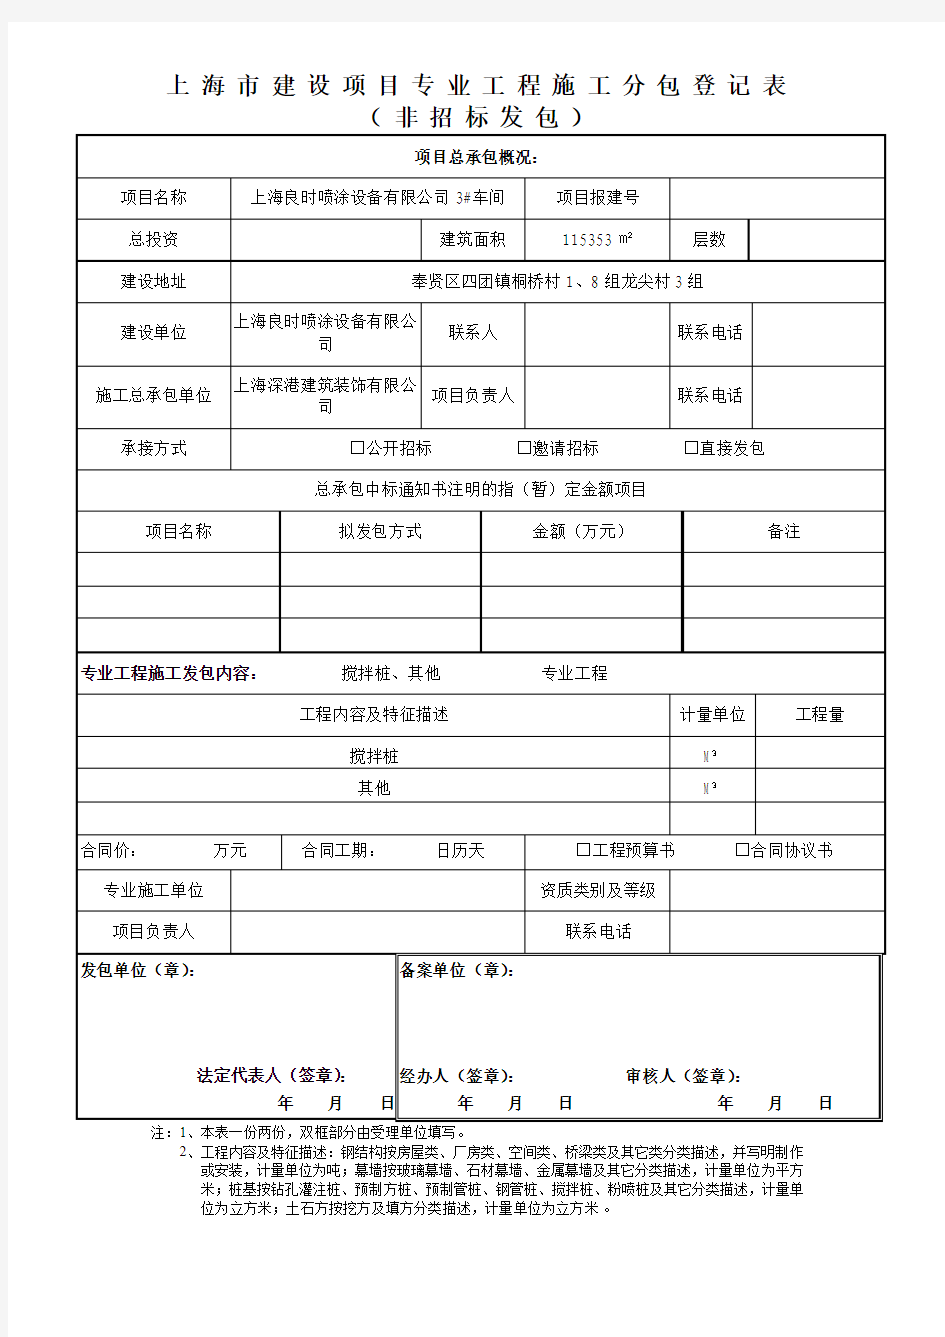 上海市建设项目专业工程施工分包登记表